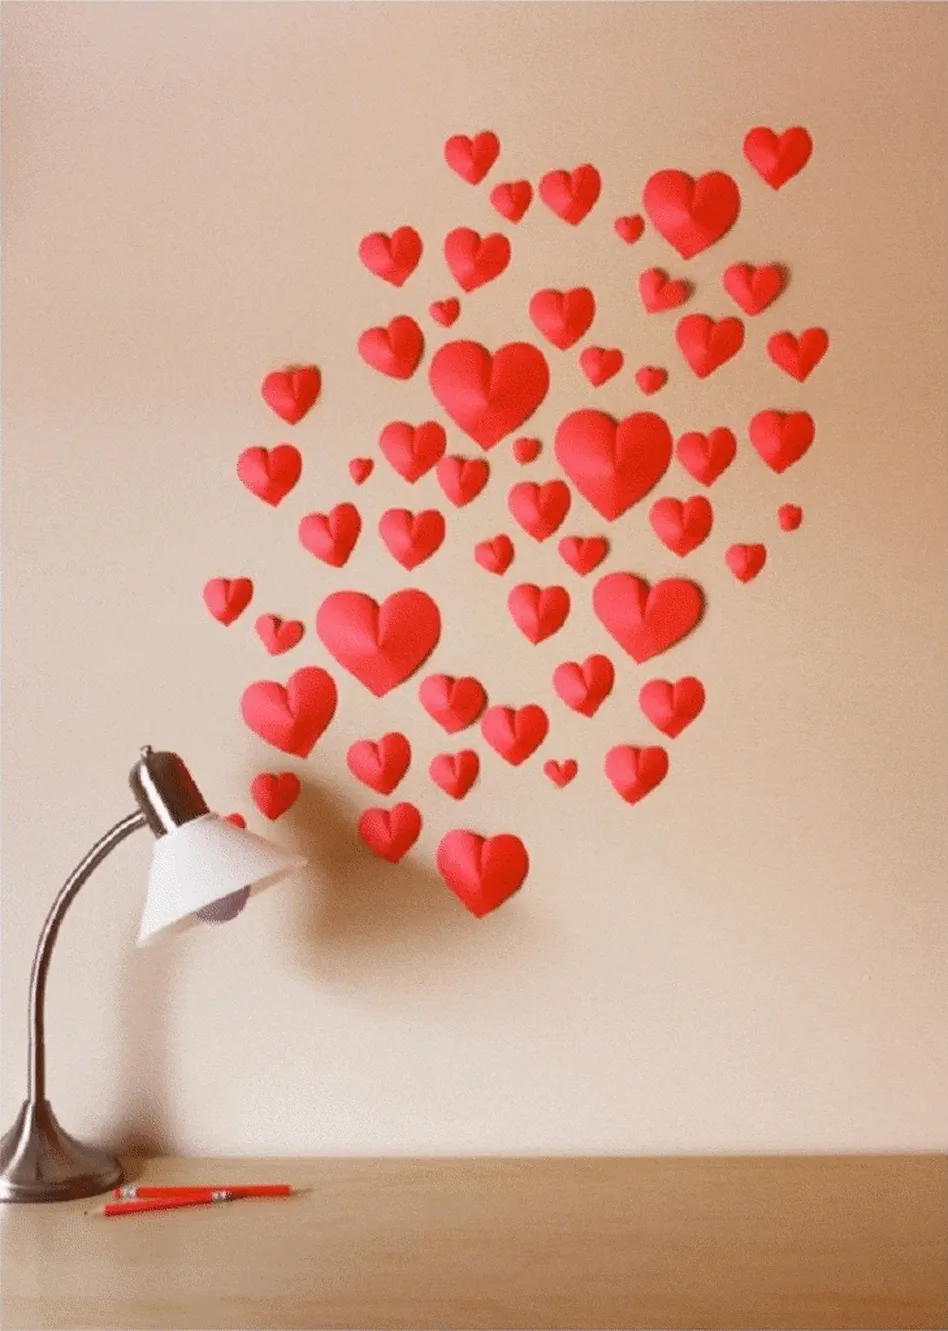 Сердечки на стене